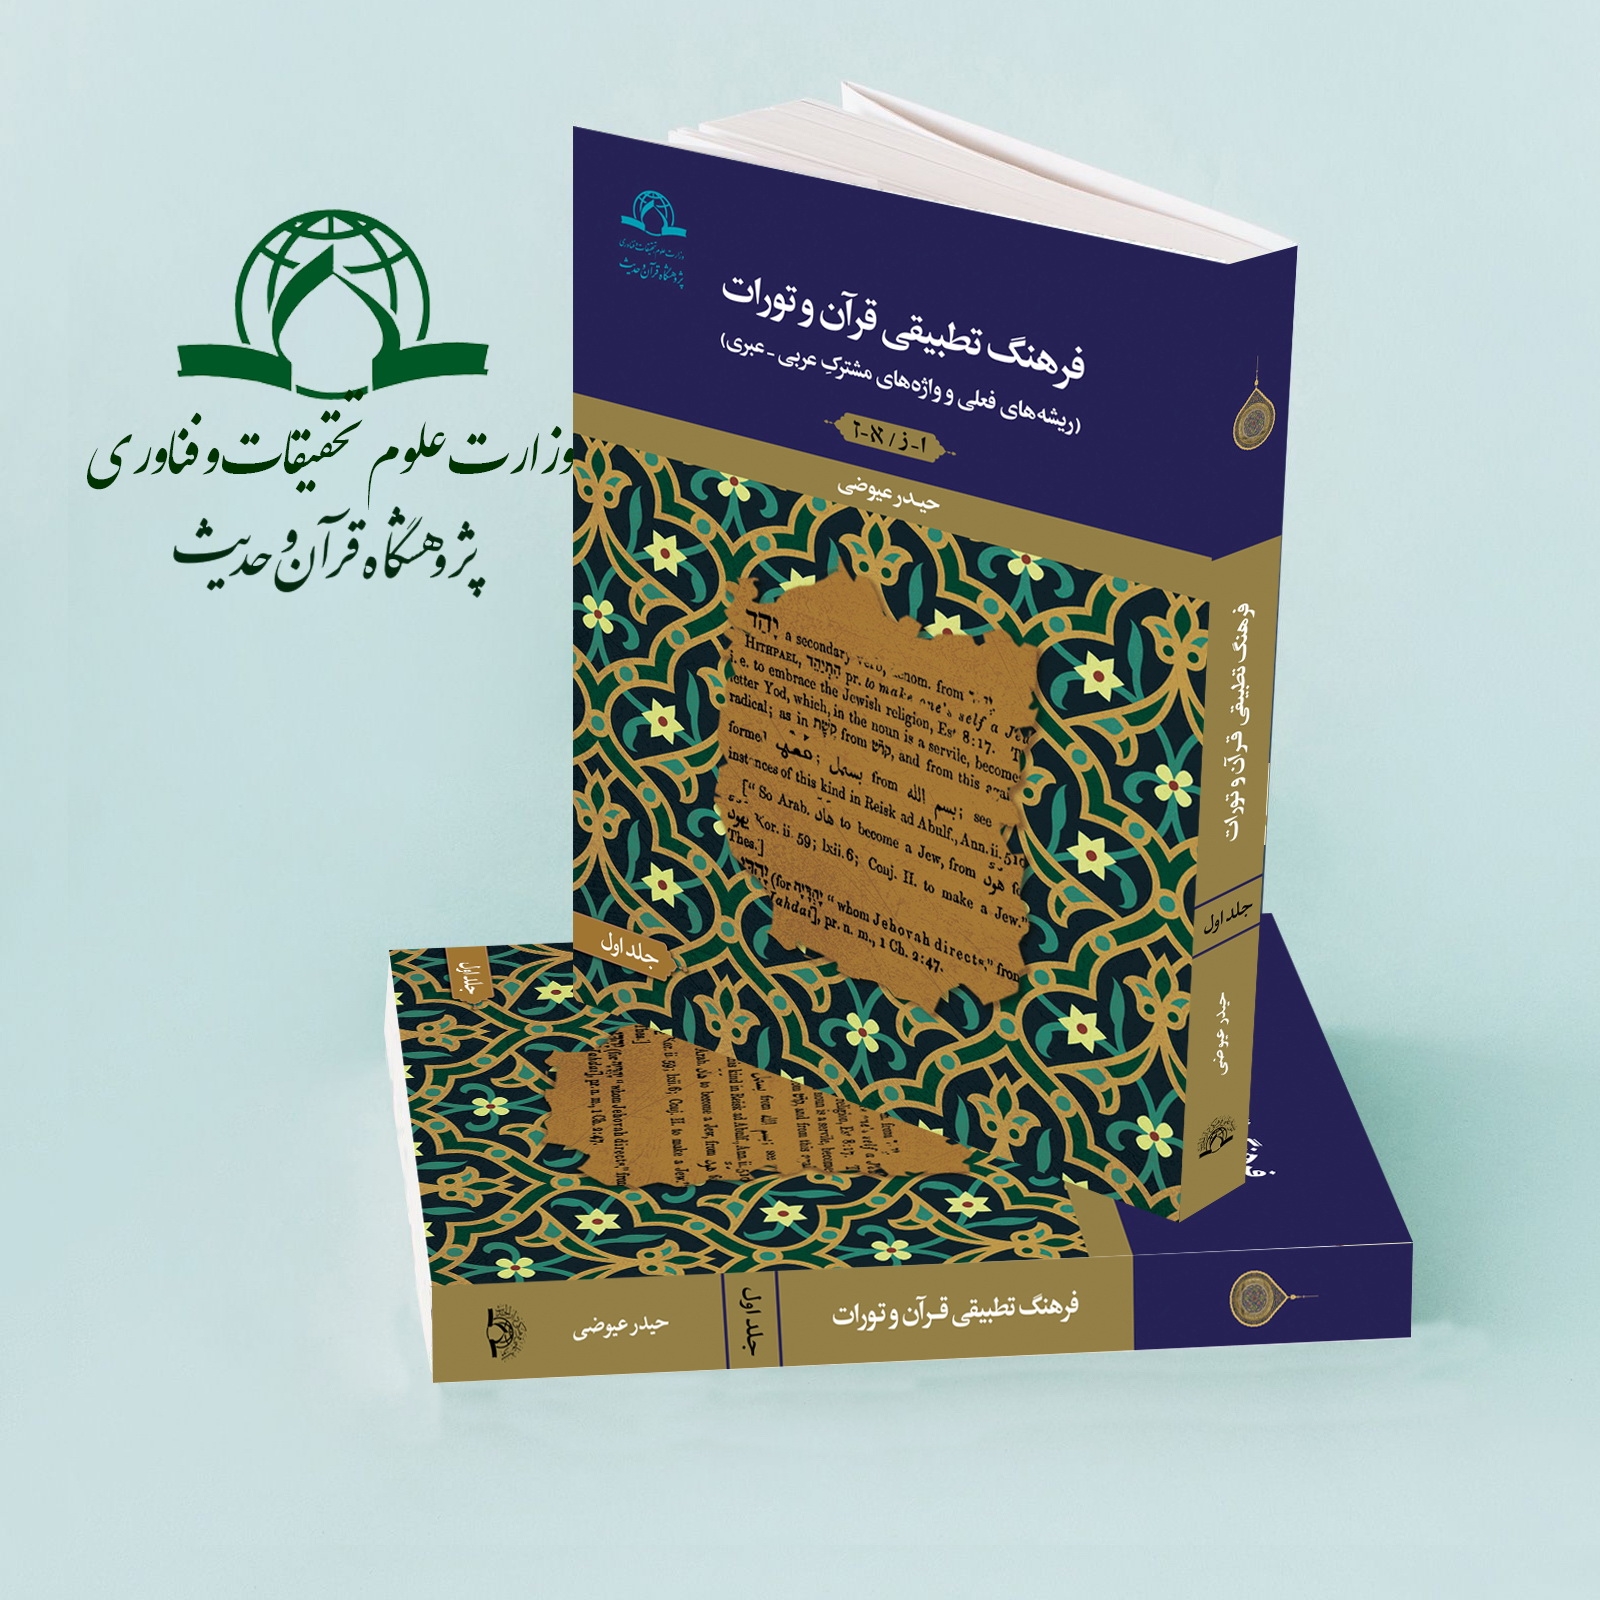 کتاب "فرهنگ تطبیقی قرآن و تورات" منتشر شد